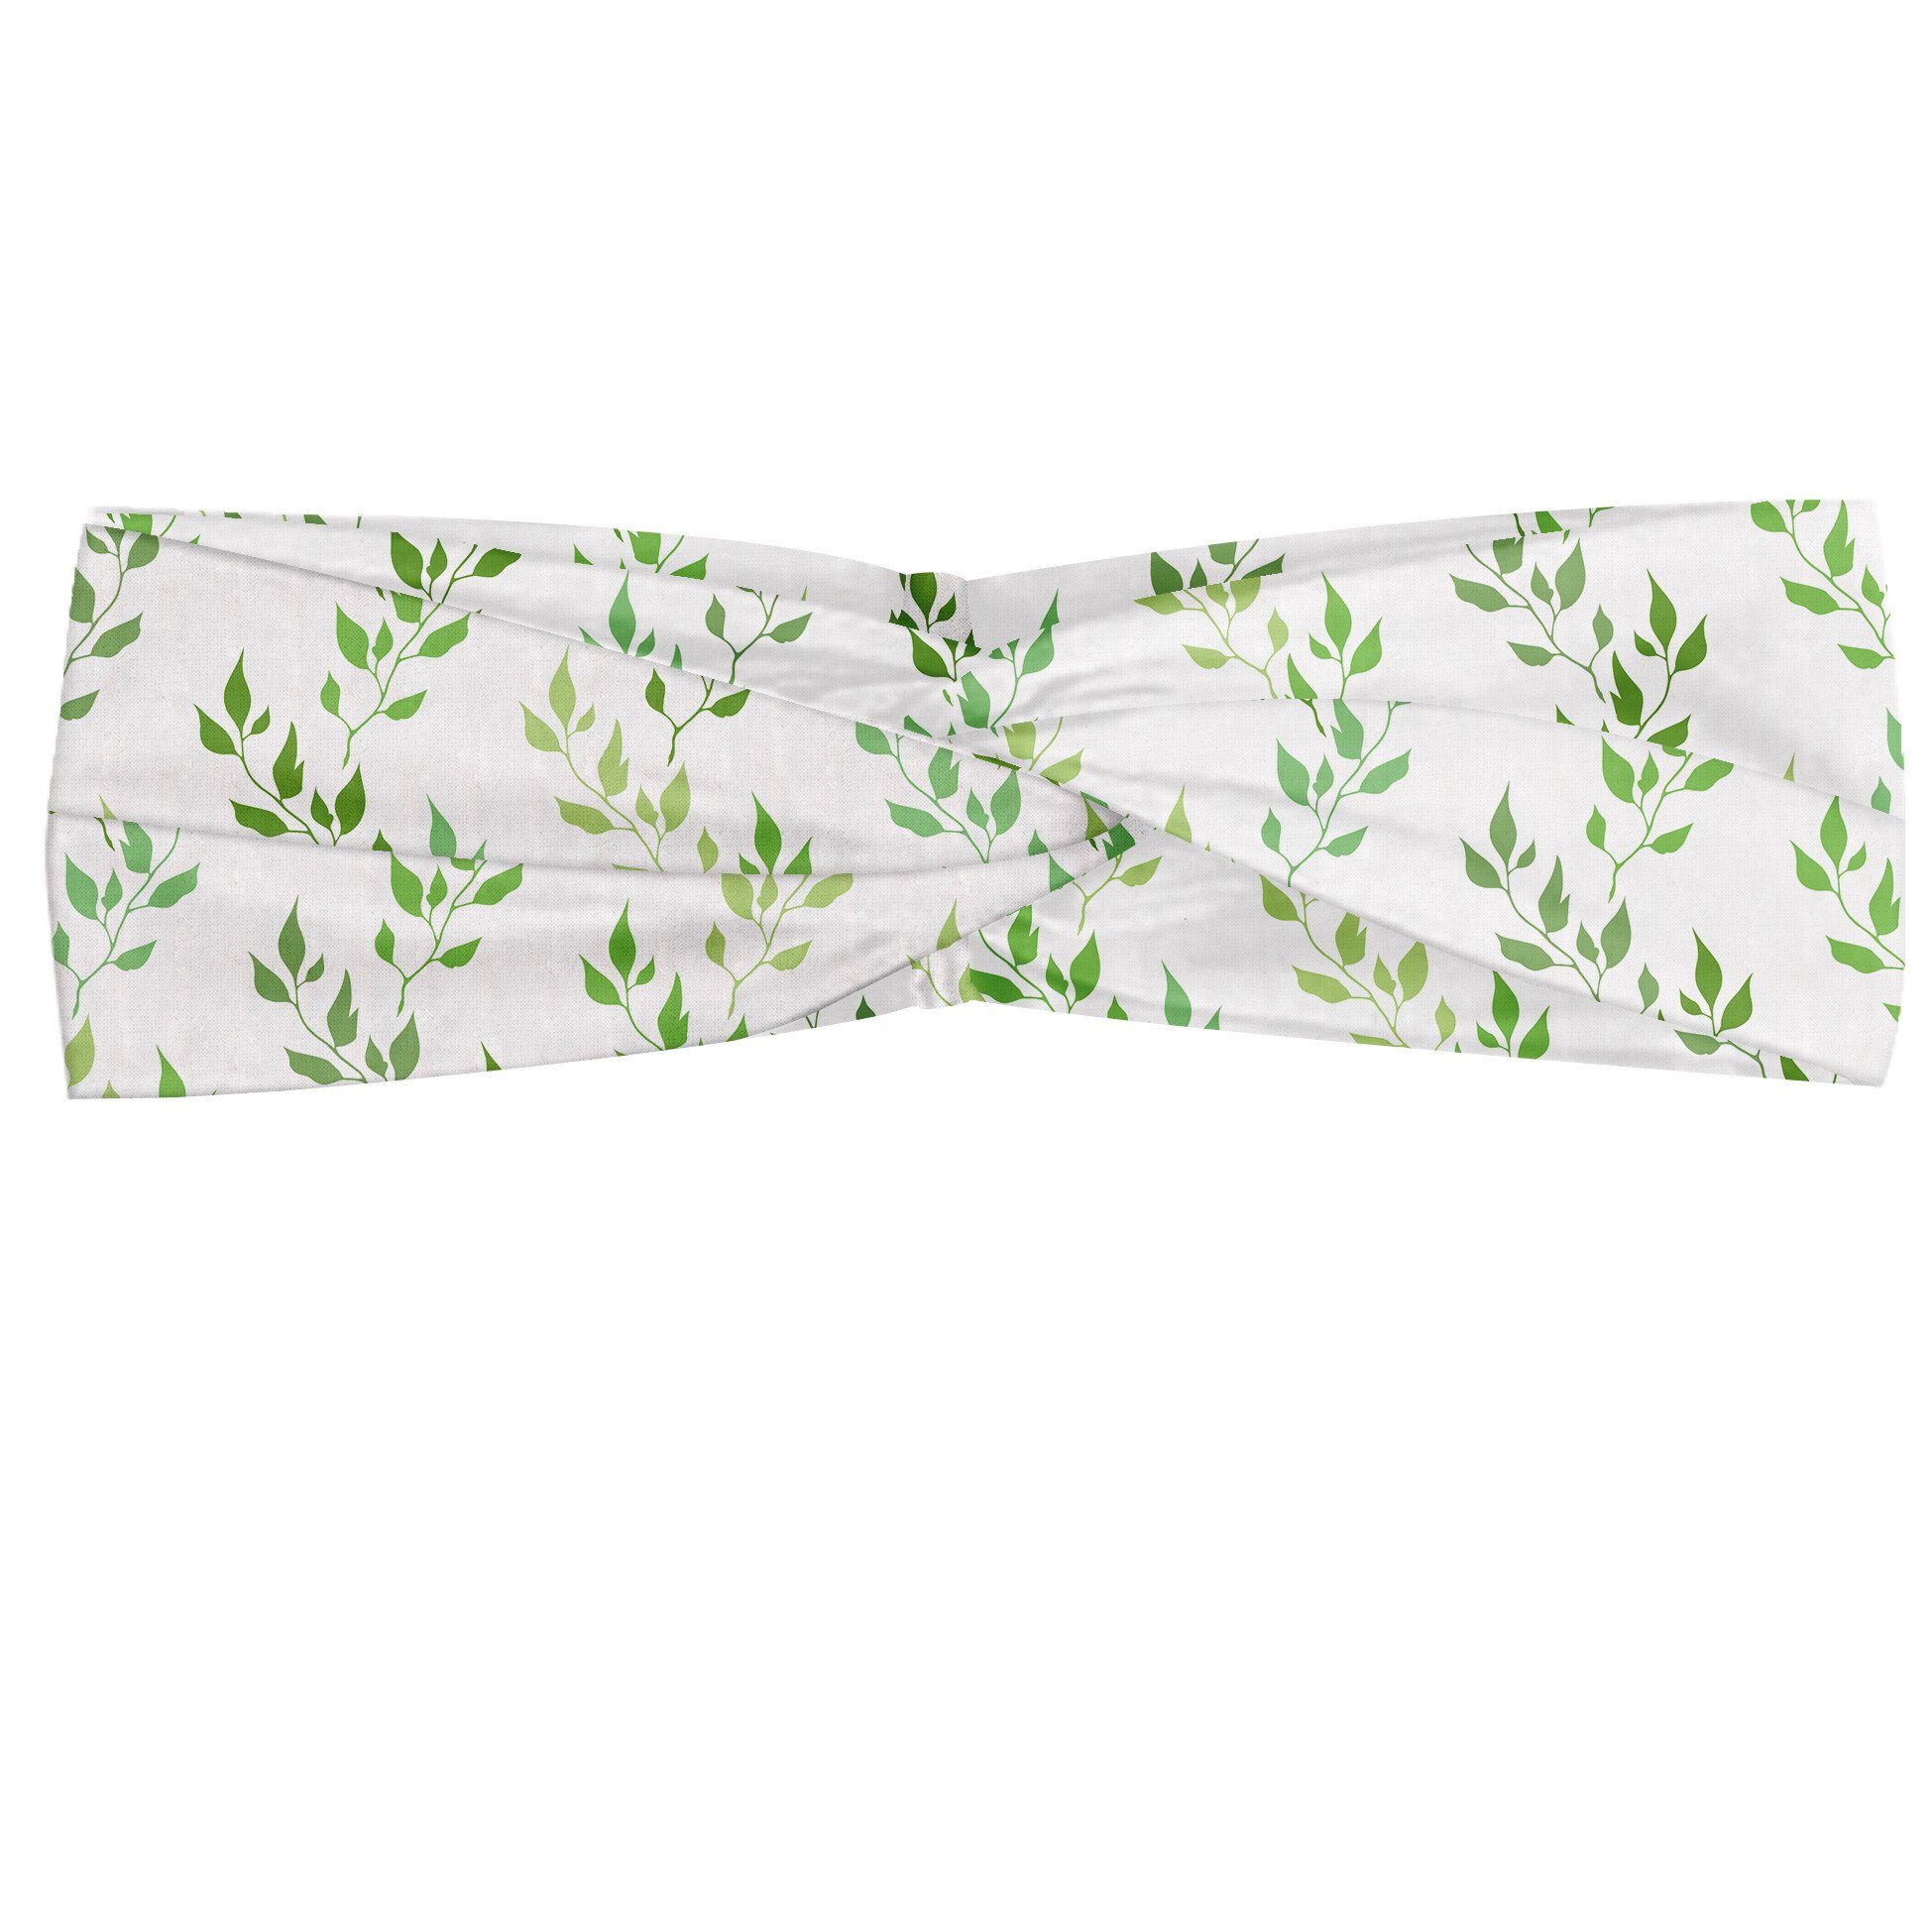 Abakuhaus Stirnband Elastisch und Angenehme alltags accessories Grün Symmetrische Olive Leaves